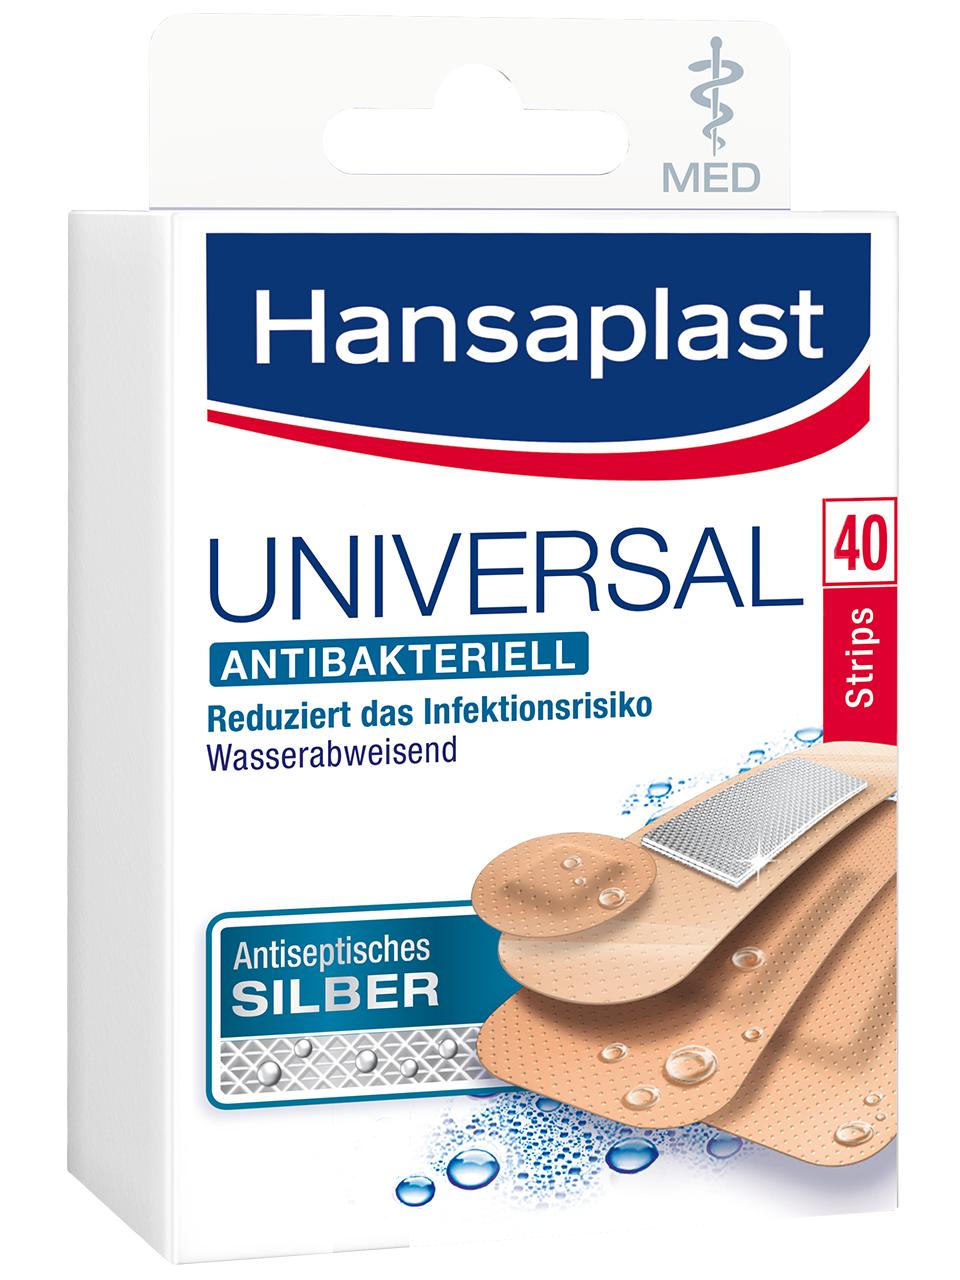 Hansaplast Universal MED antibakteriell Strips 40